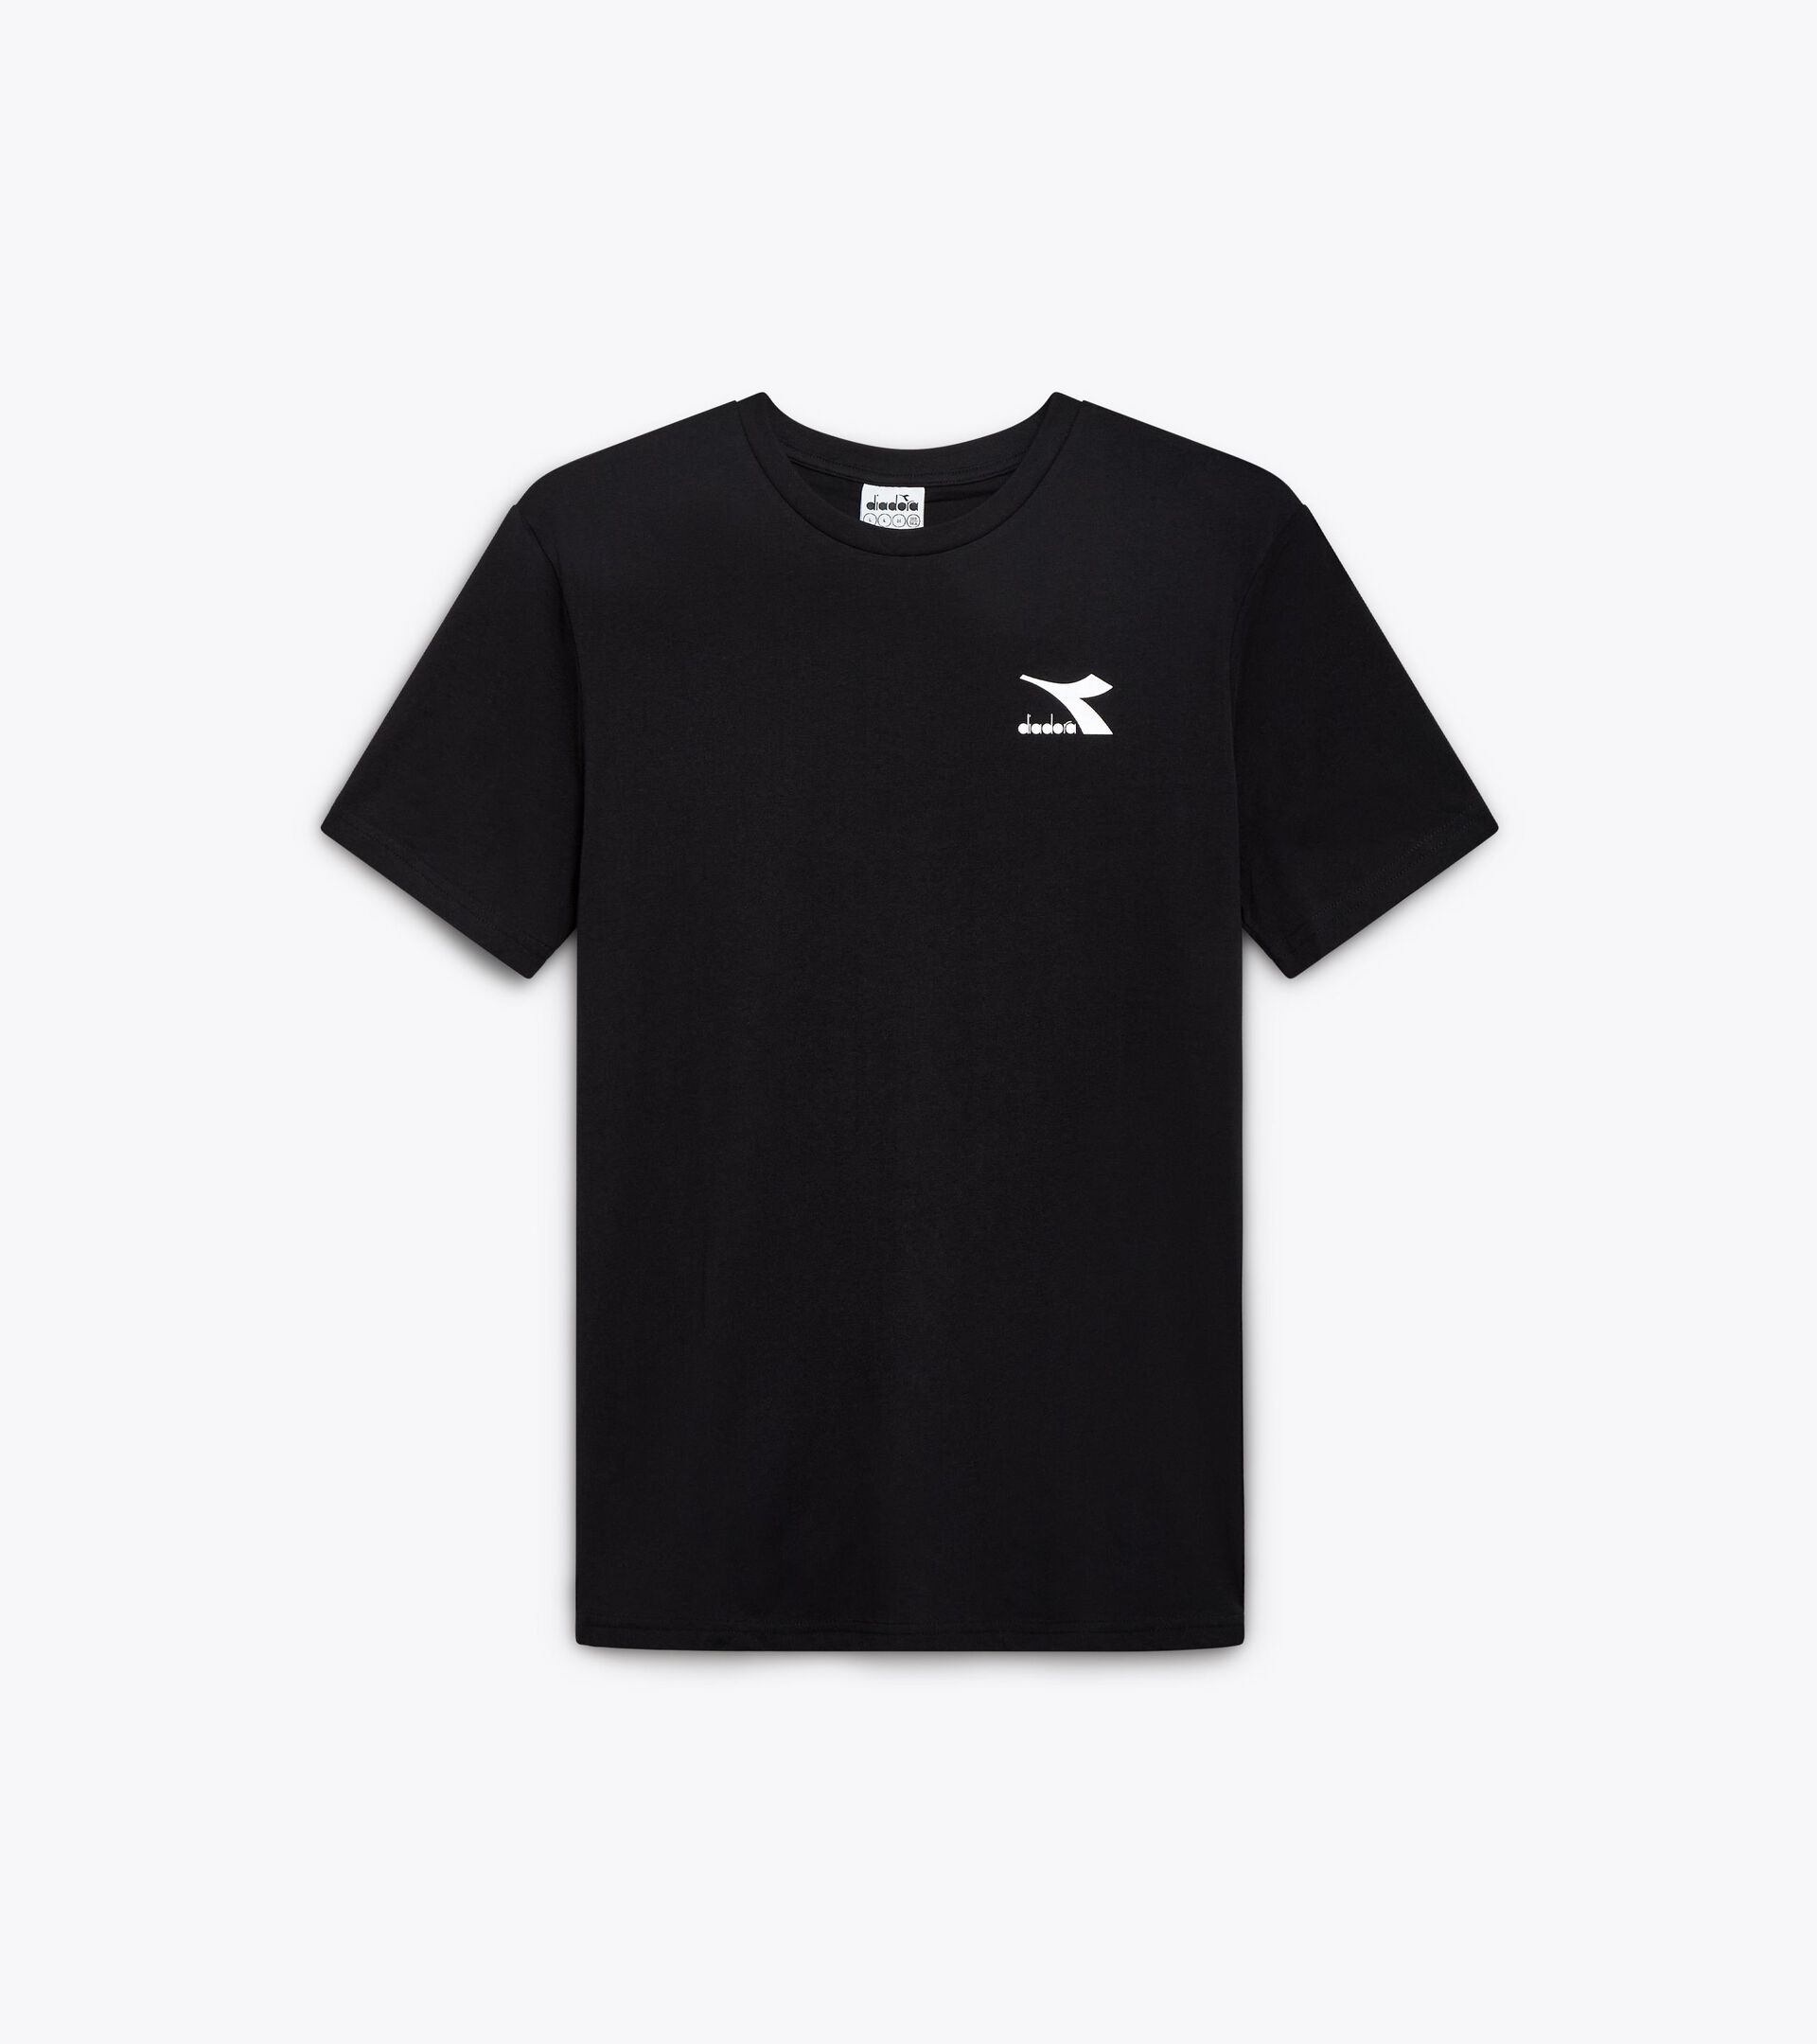 T-shirt sportiva - Uomo T-SHIRT SS CORE NERO - Diadora